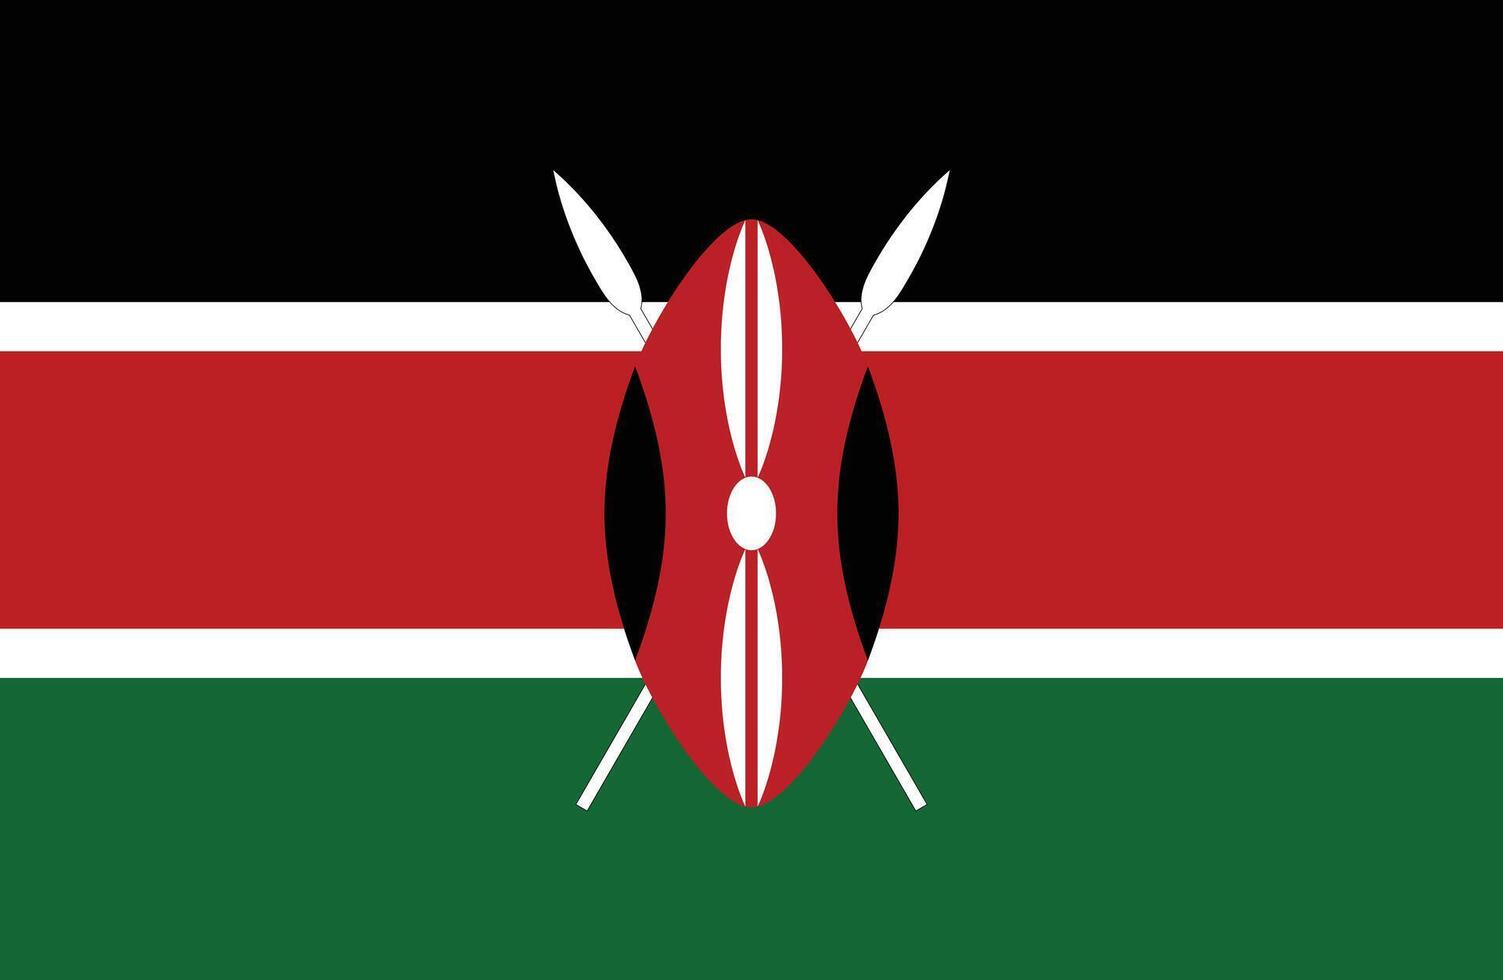 Flat Illustration of Kenya national flag. Kenya flag design. vector